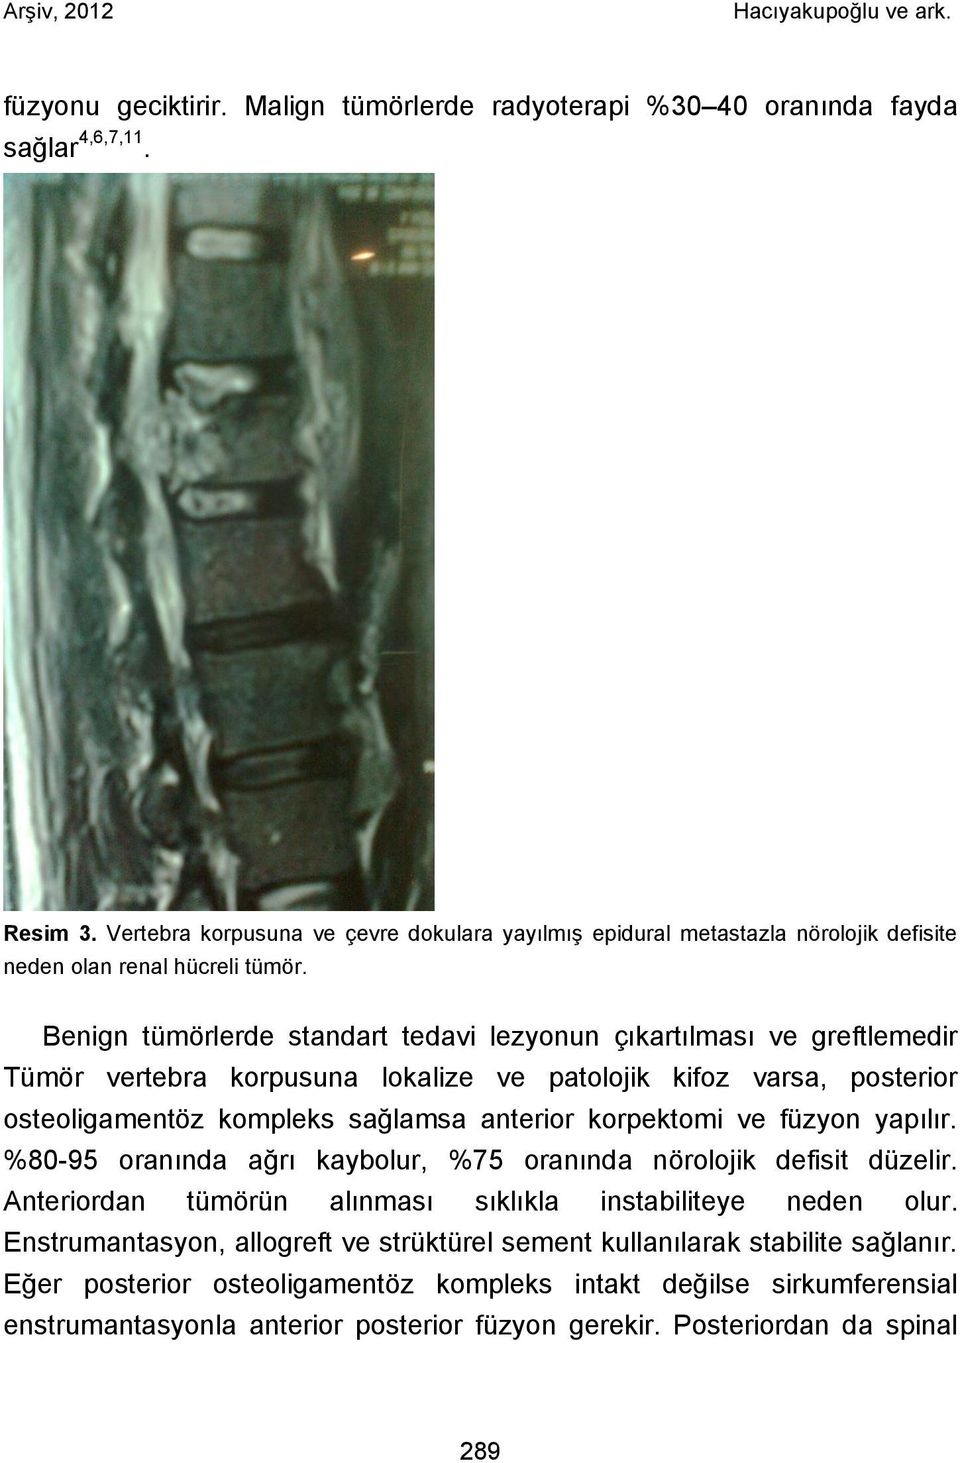 Benign tümörlerde standart tedavi lezyonun çıkartılması ve greftlemedir Tümör vertebra korpusuna lokalize ve patolojik kifoz varsa, posterior osteoligamentöz kompleks sağlamsa anterior korpektomi ve